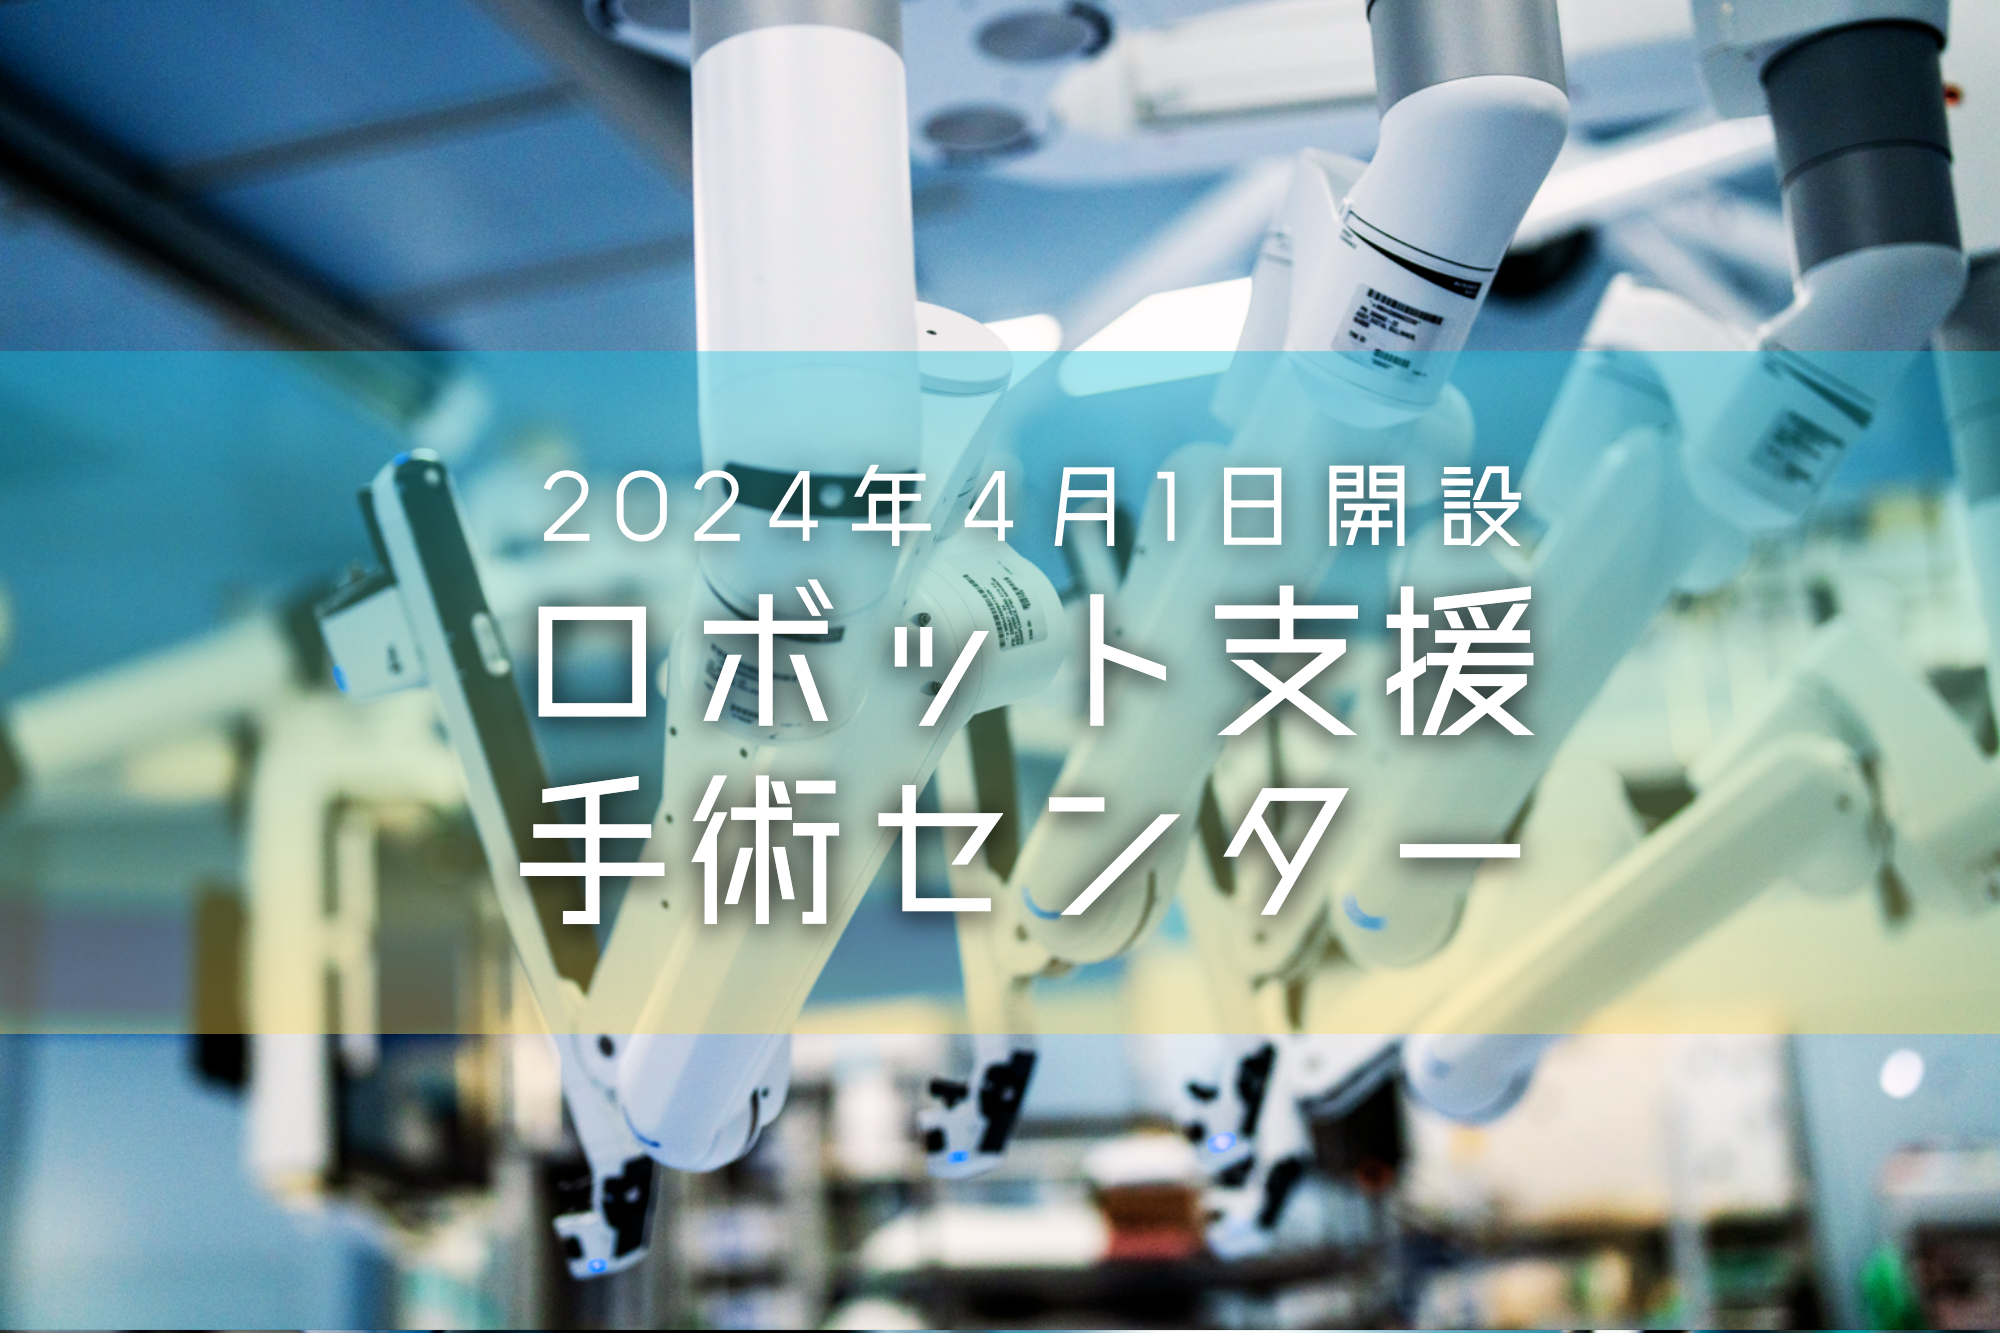 岐阜大学医学部附属病院2024年4月1日開設 ロボット手術支援センター